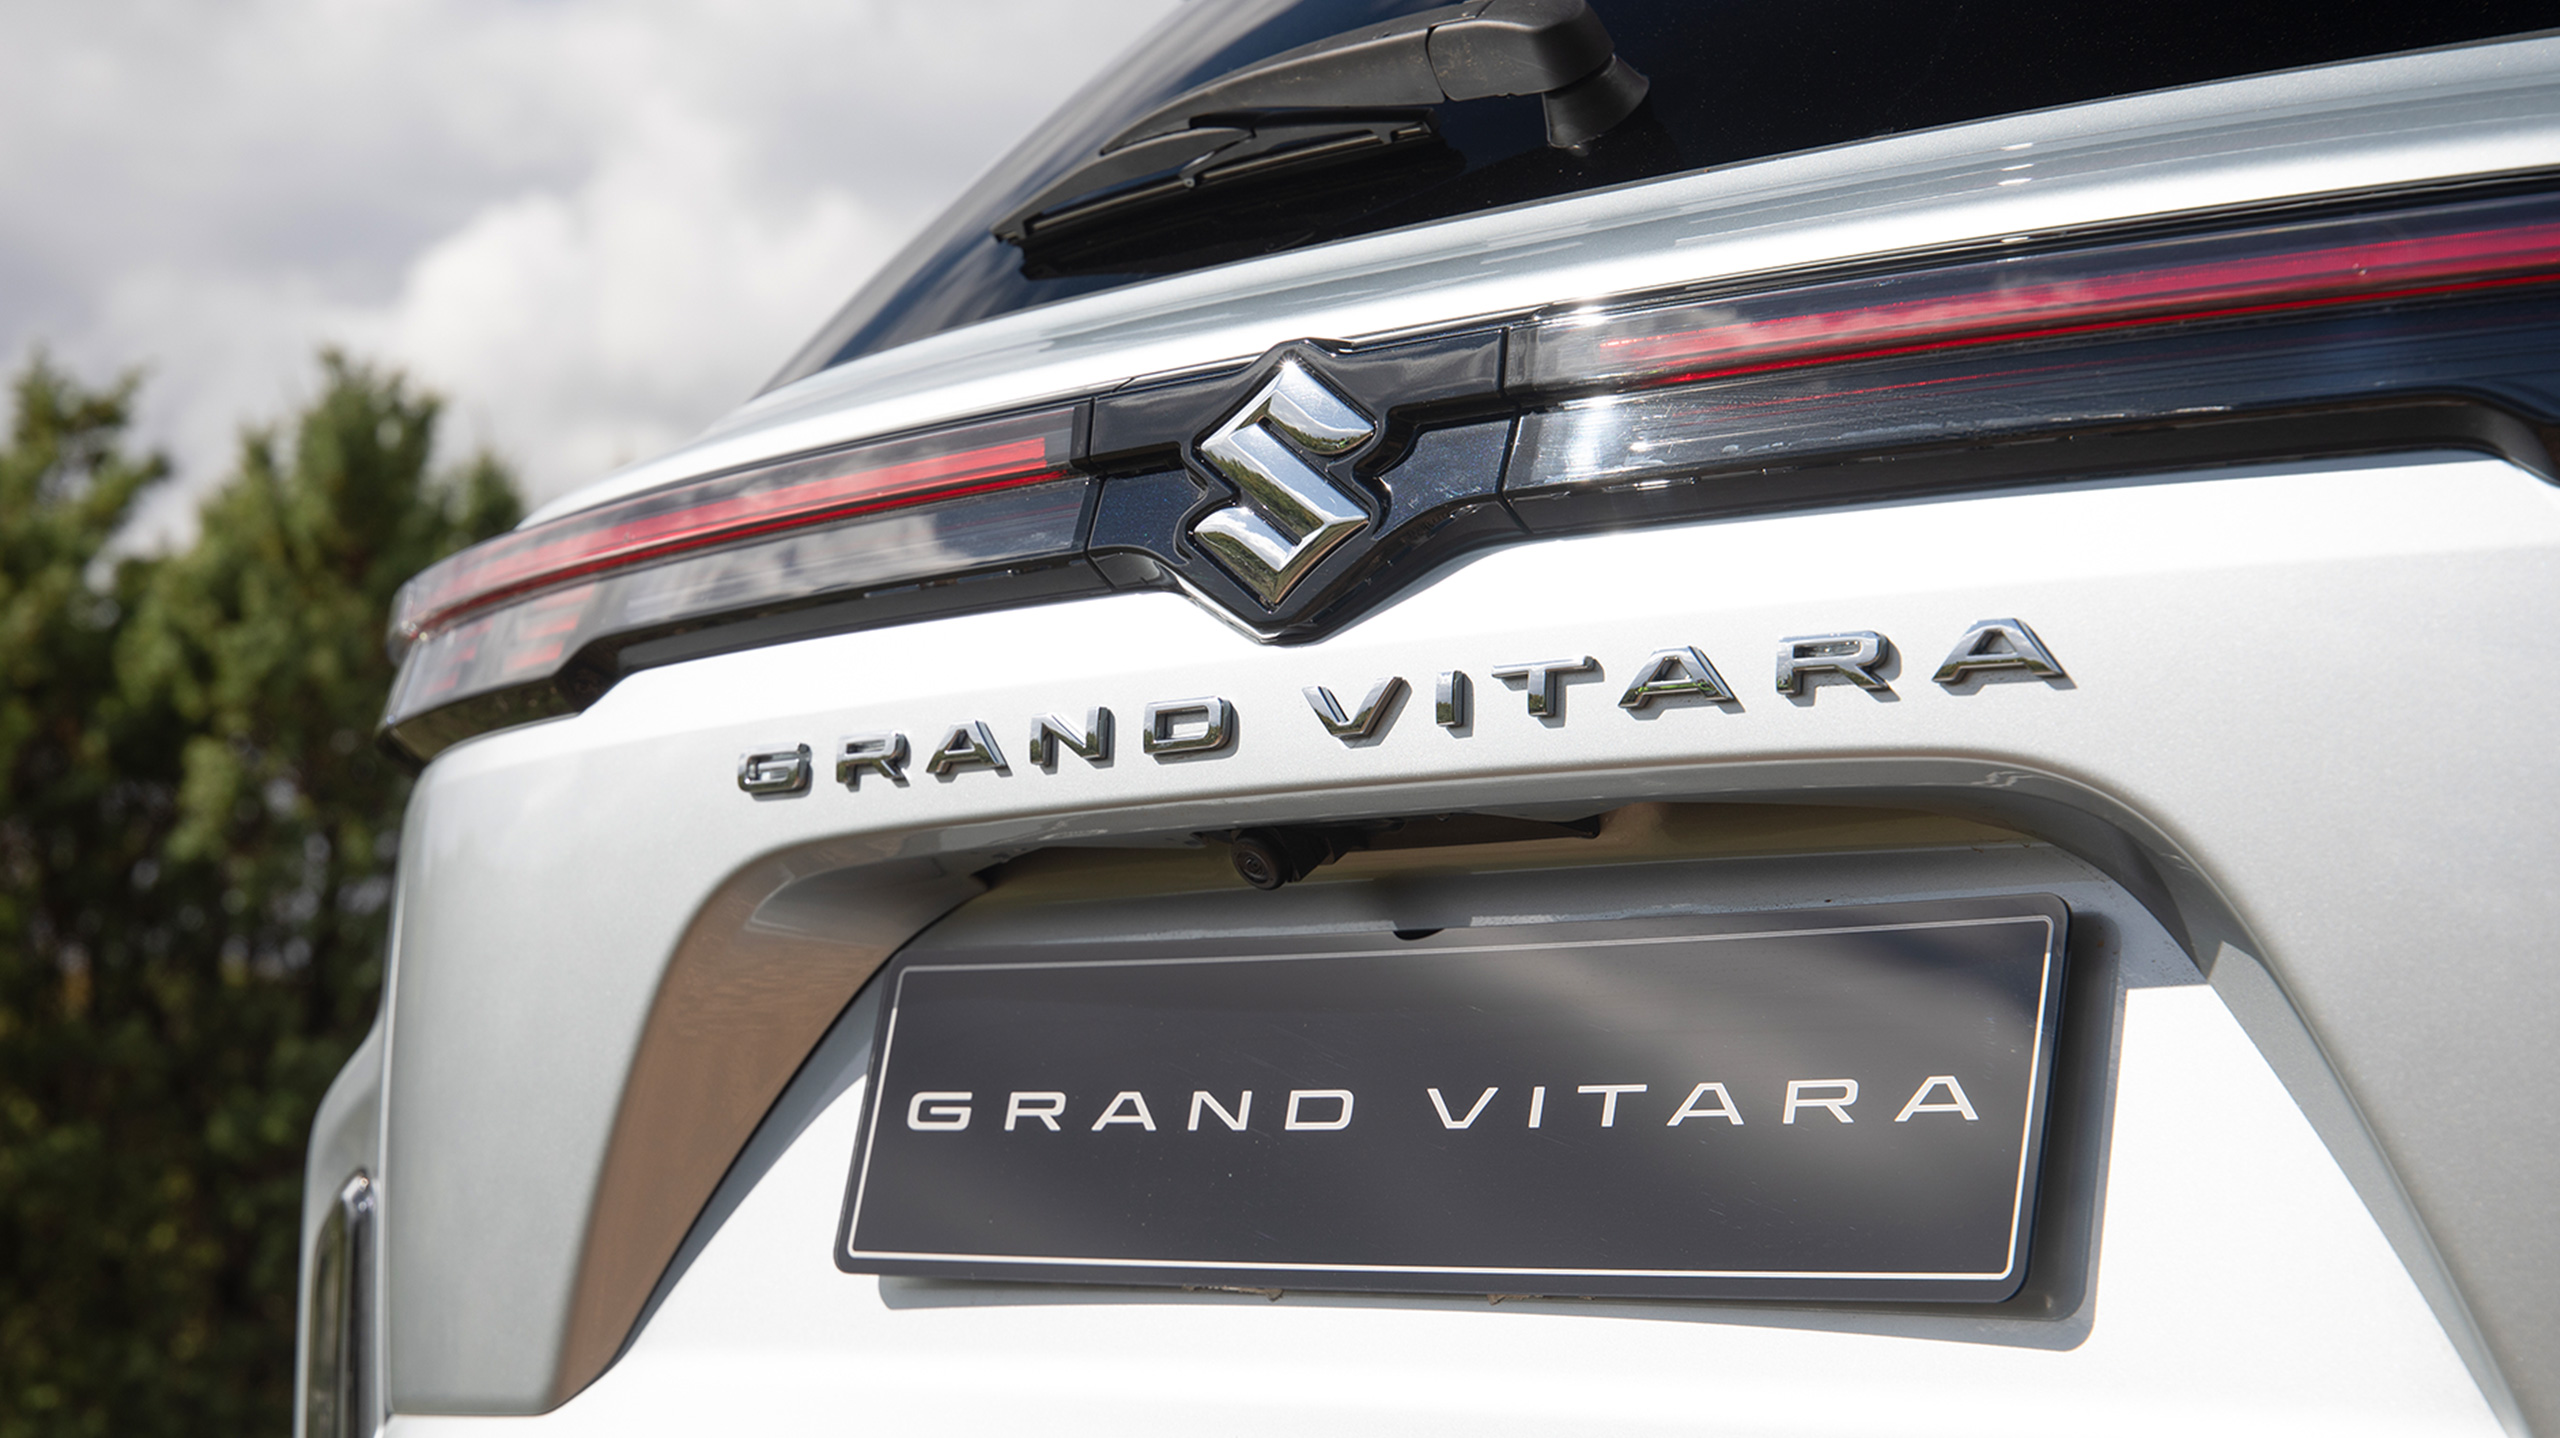 Grand Vitara rear emblem close shot